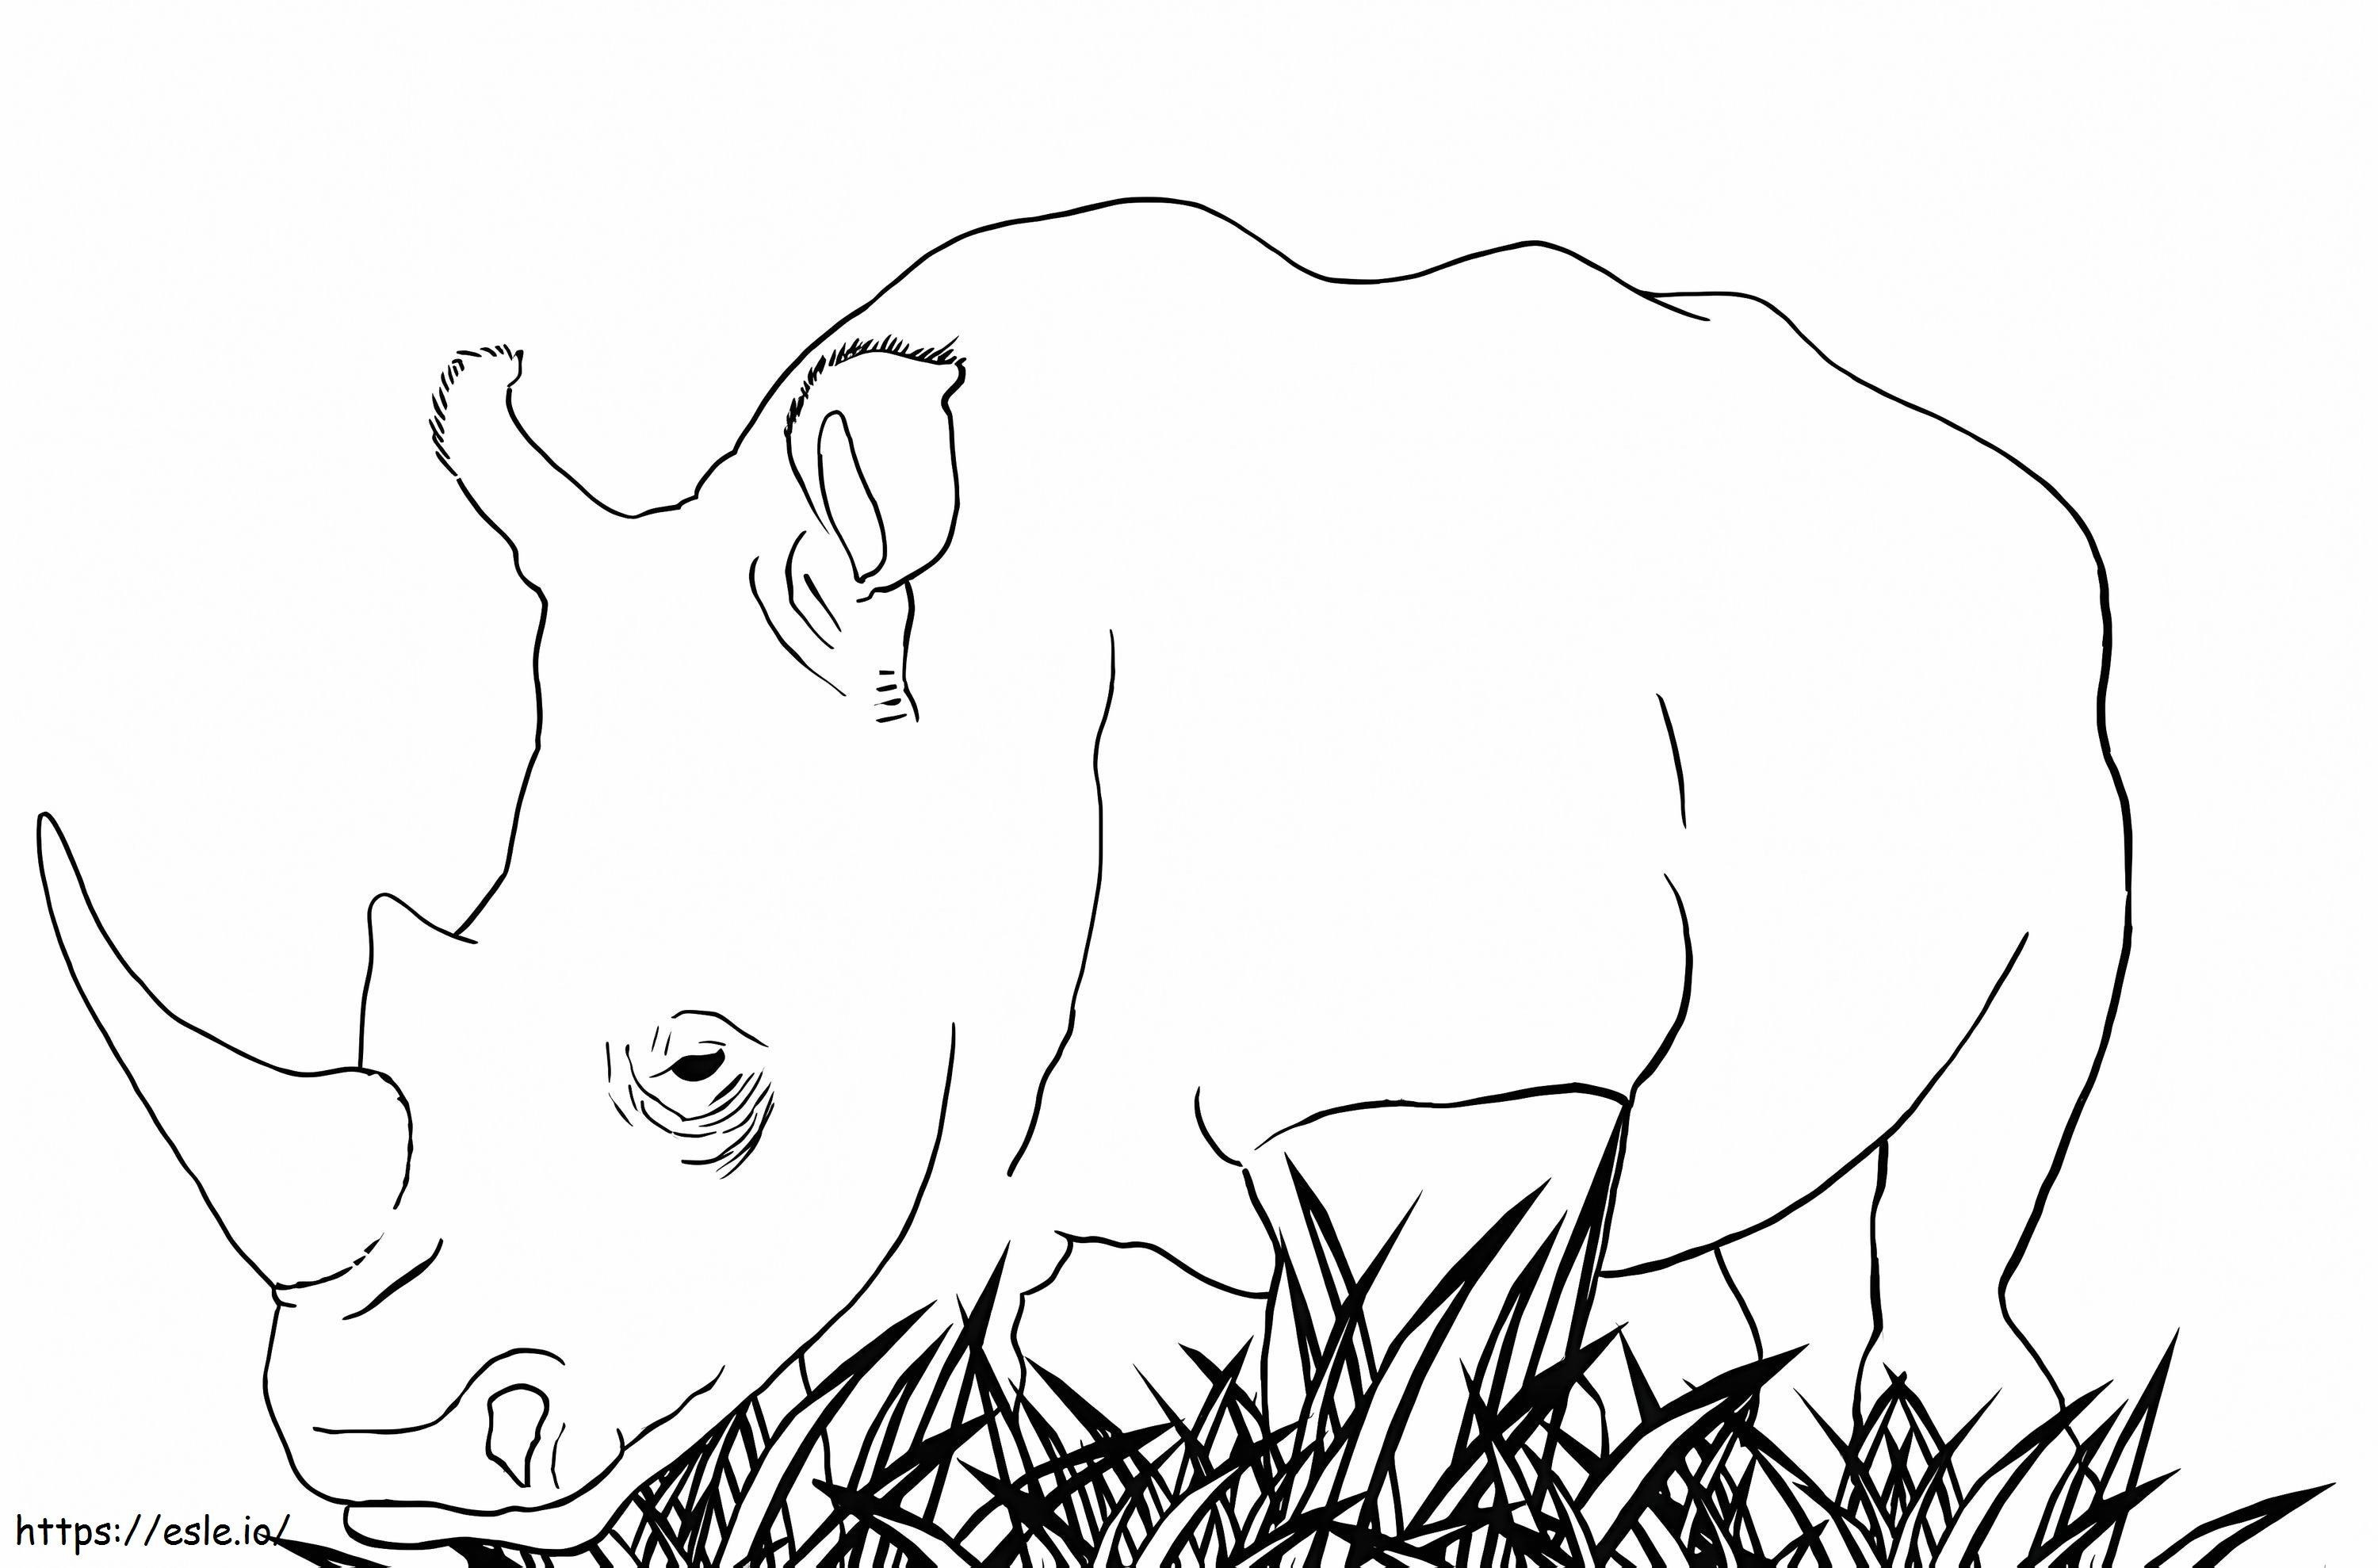 Rinoceronte blanco para colorear